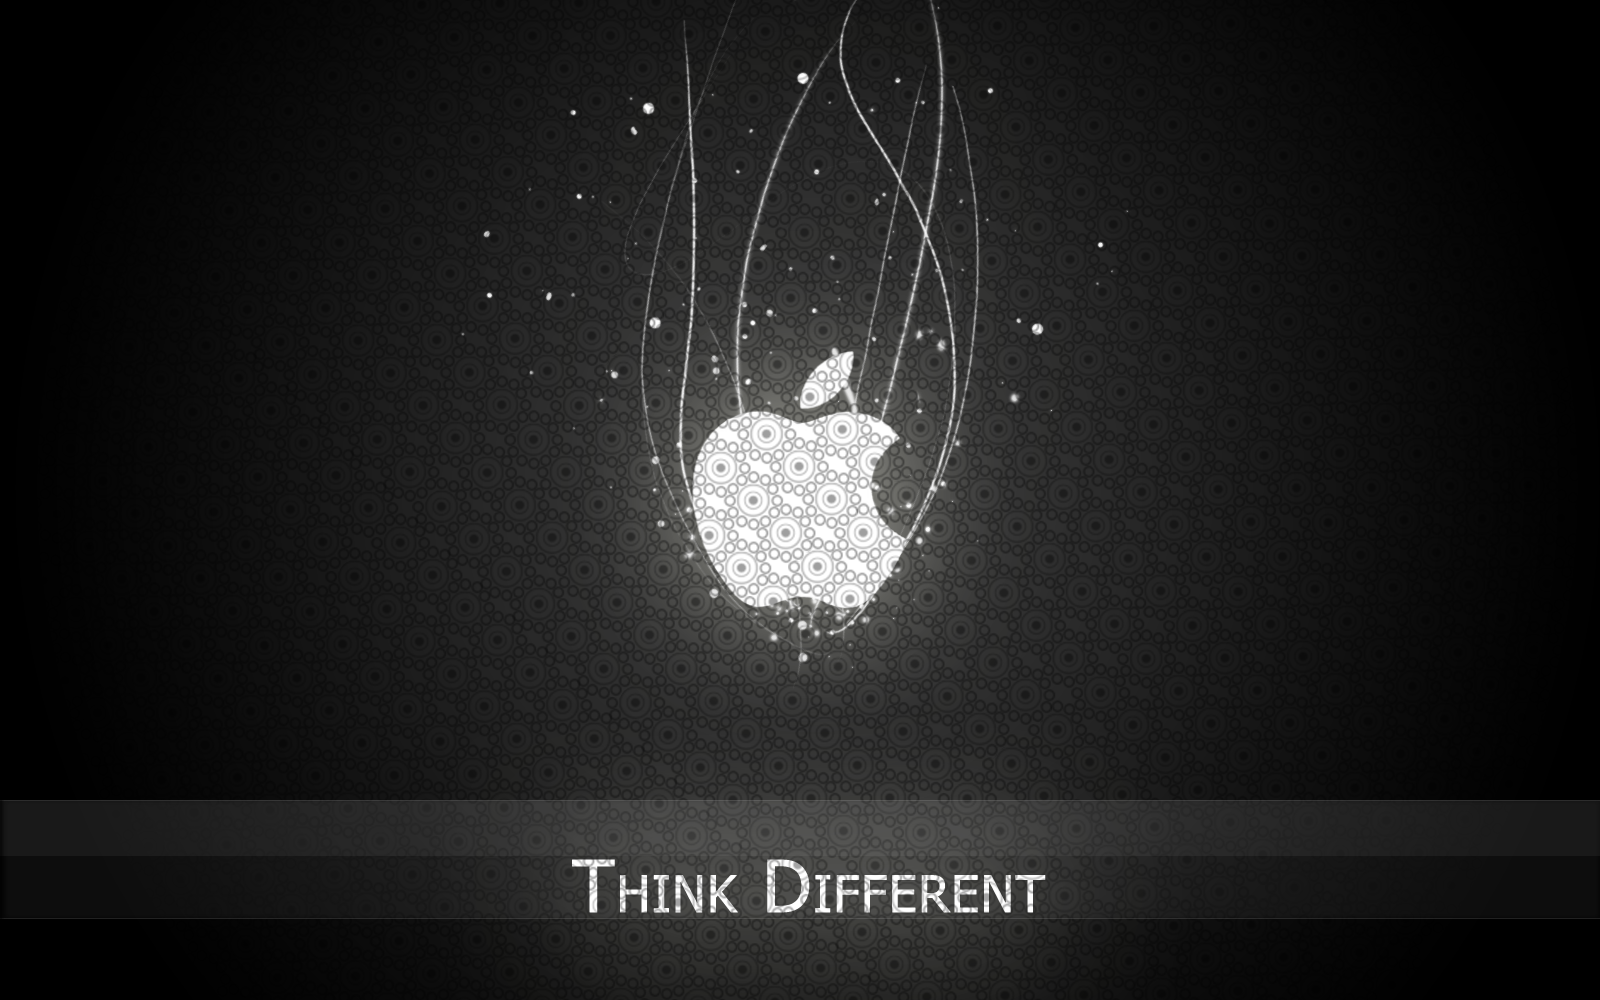 https://blogger.googleusercontent.com/img/b/R29vZ2xl/AVvXsEhtZMbWLVo7T1Q1s-wCl-llP5K8QIY08rtuI5YaYZn37PdksmXqZ27r053jCbXfaVqNBDmPx3dXcwvoE0pjp1JhXuprqPjTBYrcWrr2NVtApZxGcRPv8tAjr6DqdIGS50xnHqmT6NS7uVY/s1600/apple-think-different-wallpaper.png